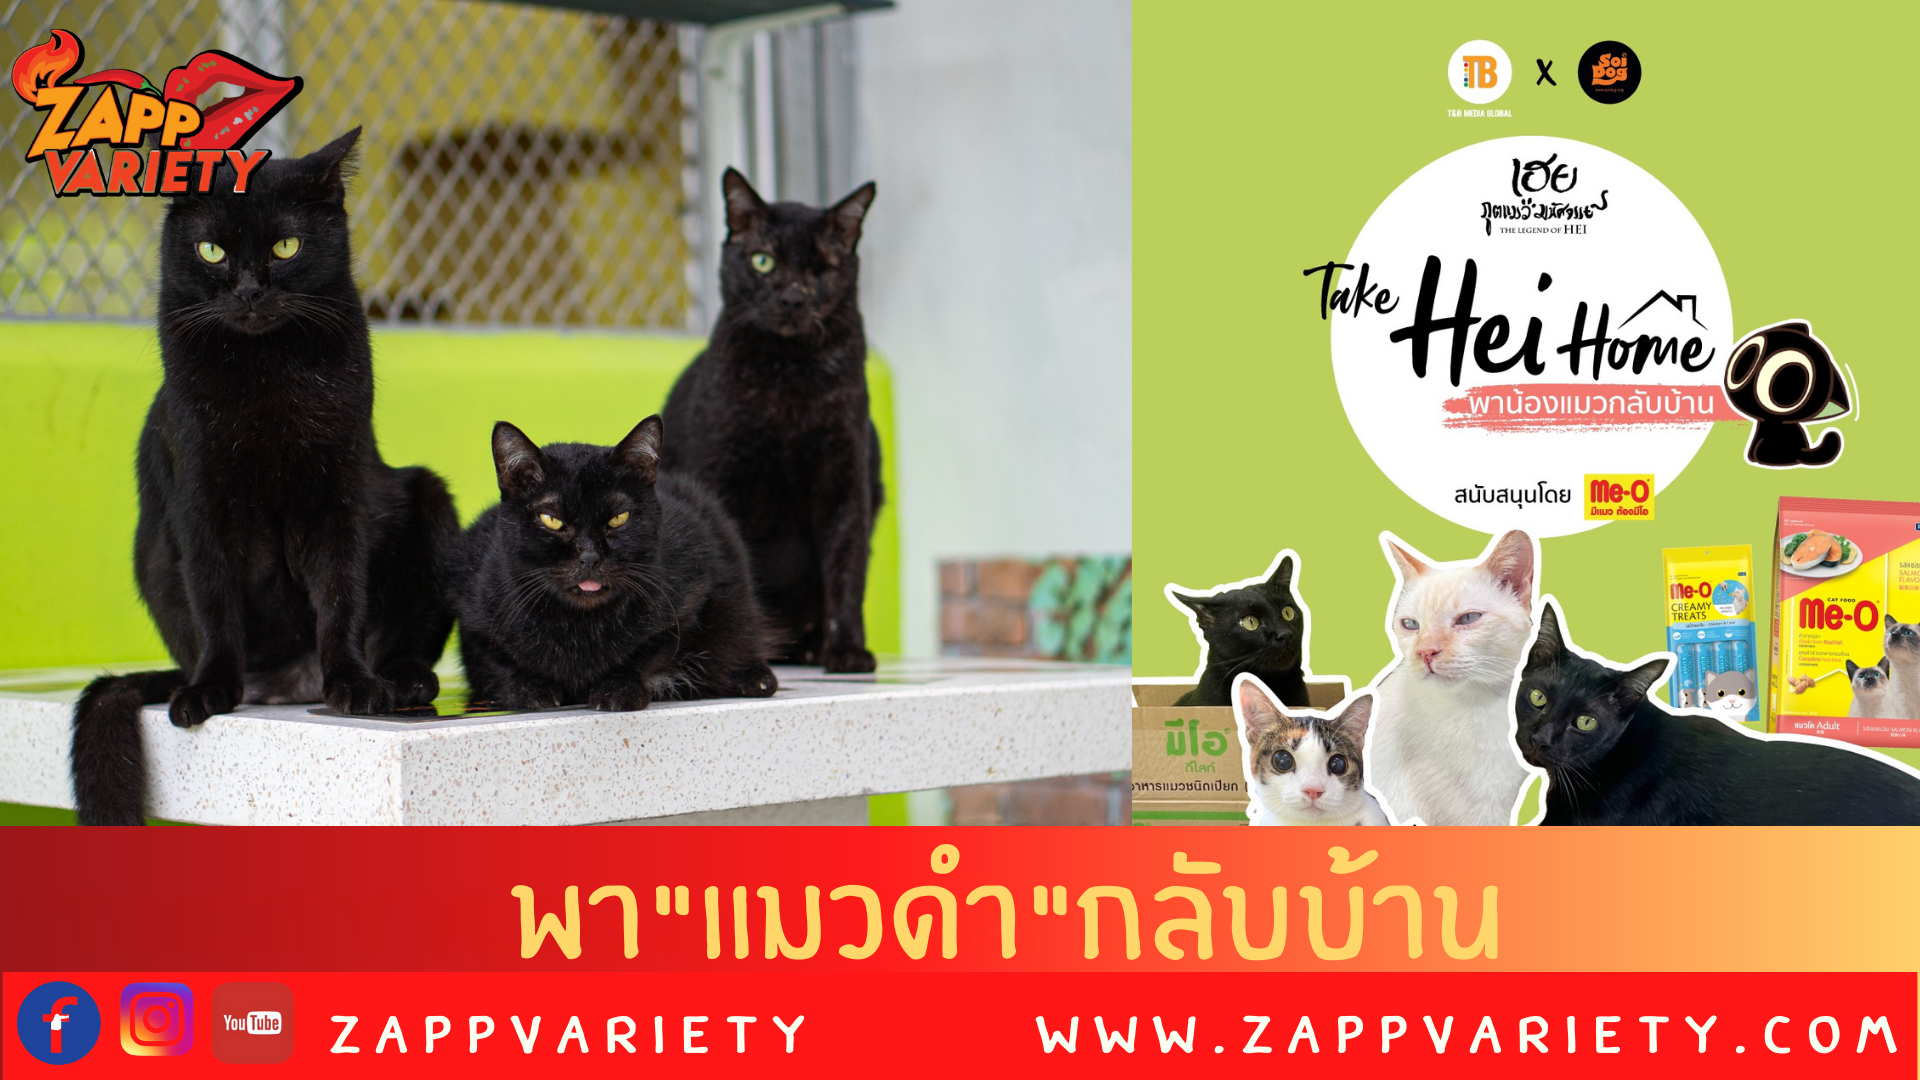 เชิญชวนรับอุปการะแมวดำกับโครงการ “Take Hei Home พาน้องแมวกลับบ้าน”